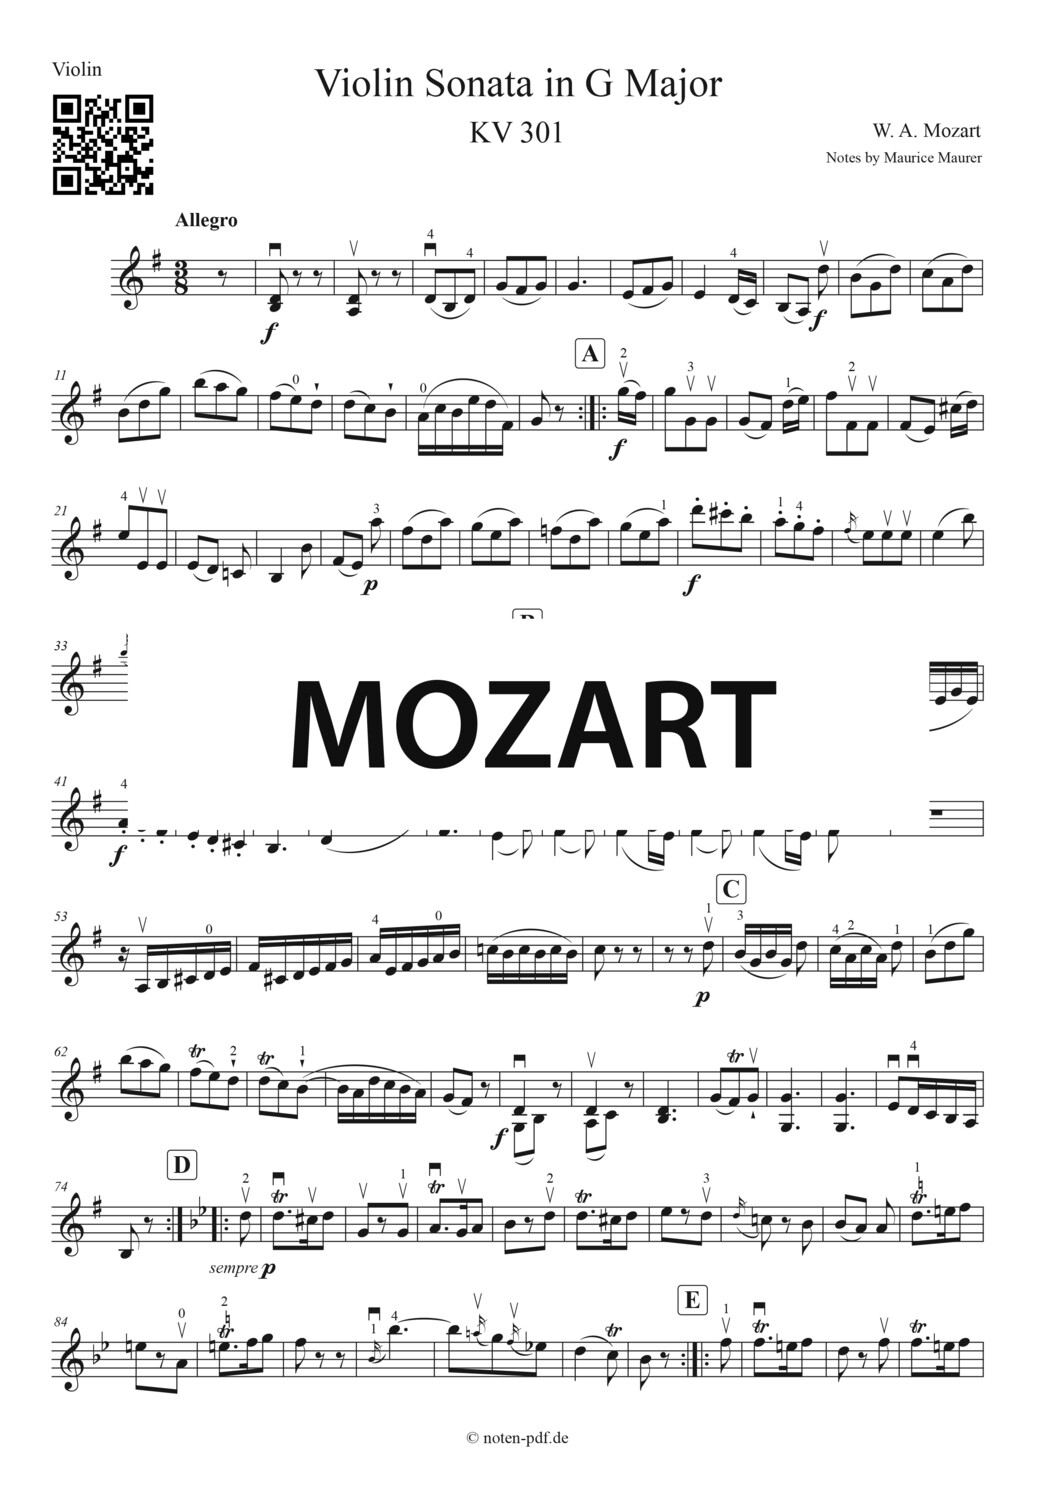 Mozart: Violin Sonate KV 301 in G Major 2. Movement Arrangement for 2 Violins